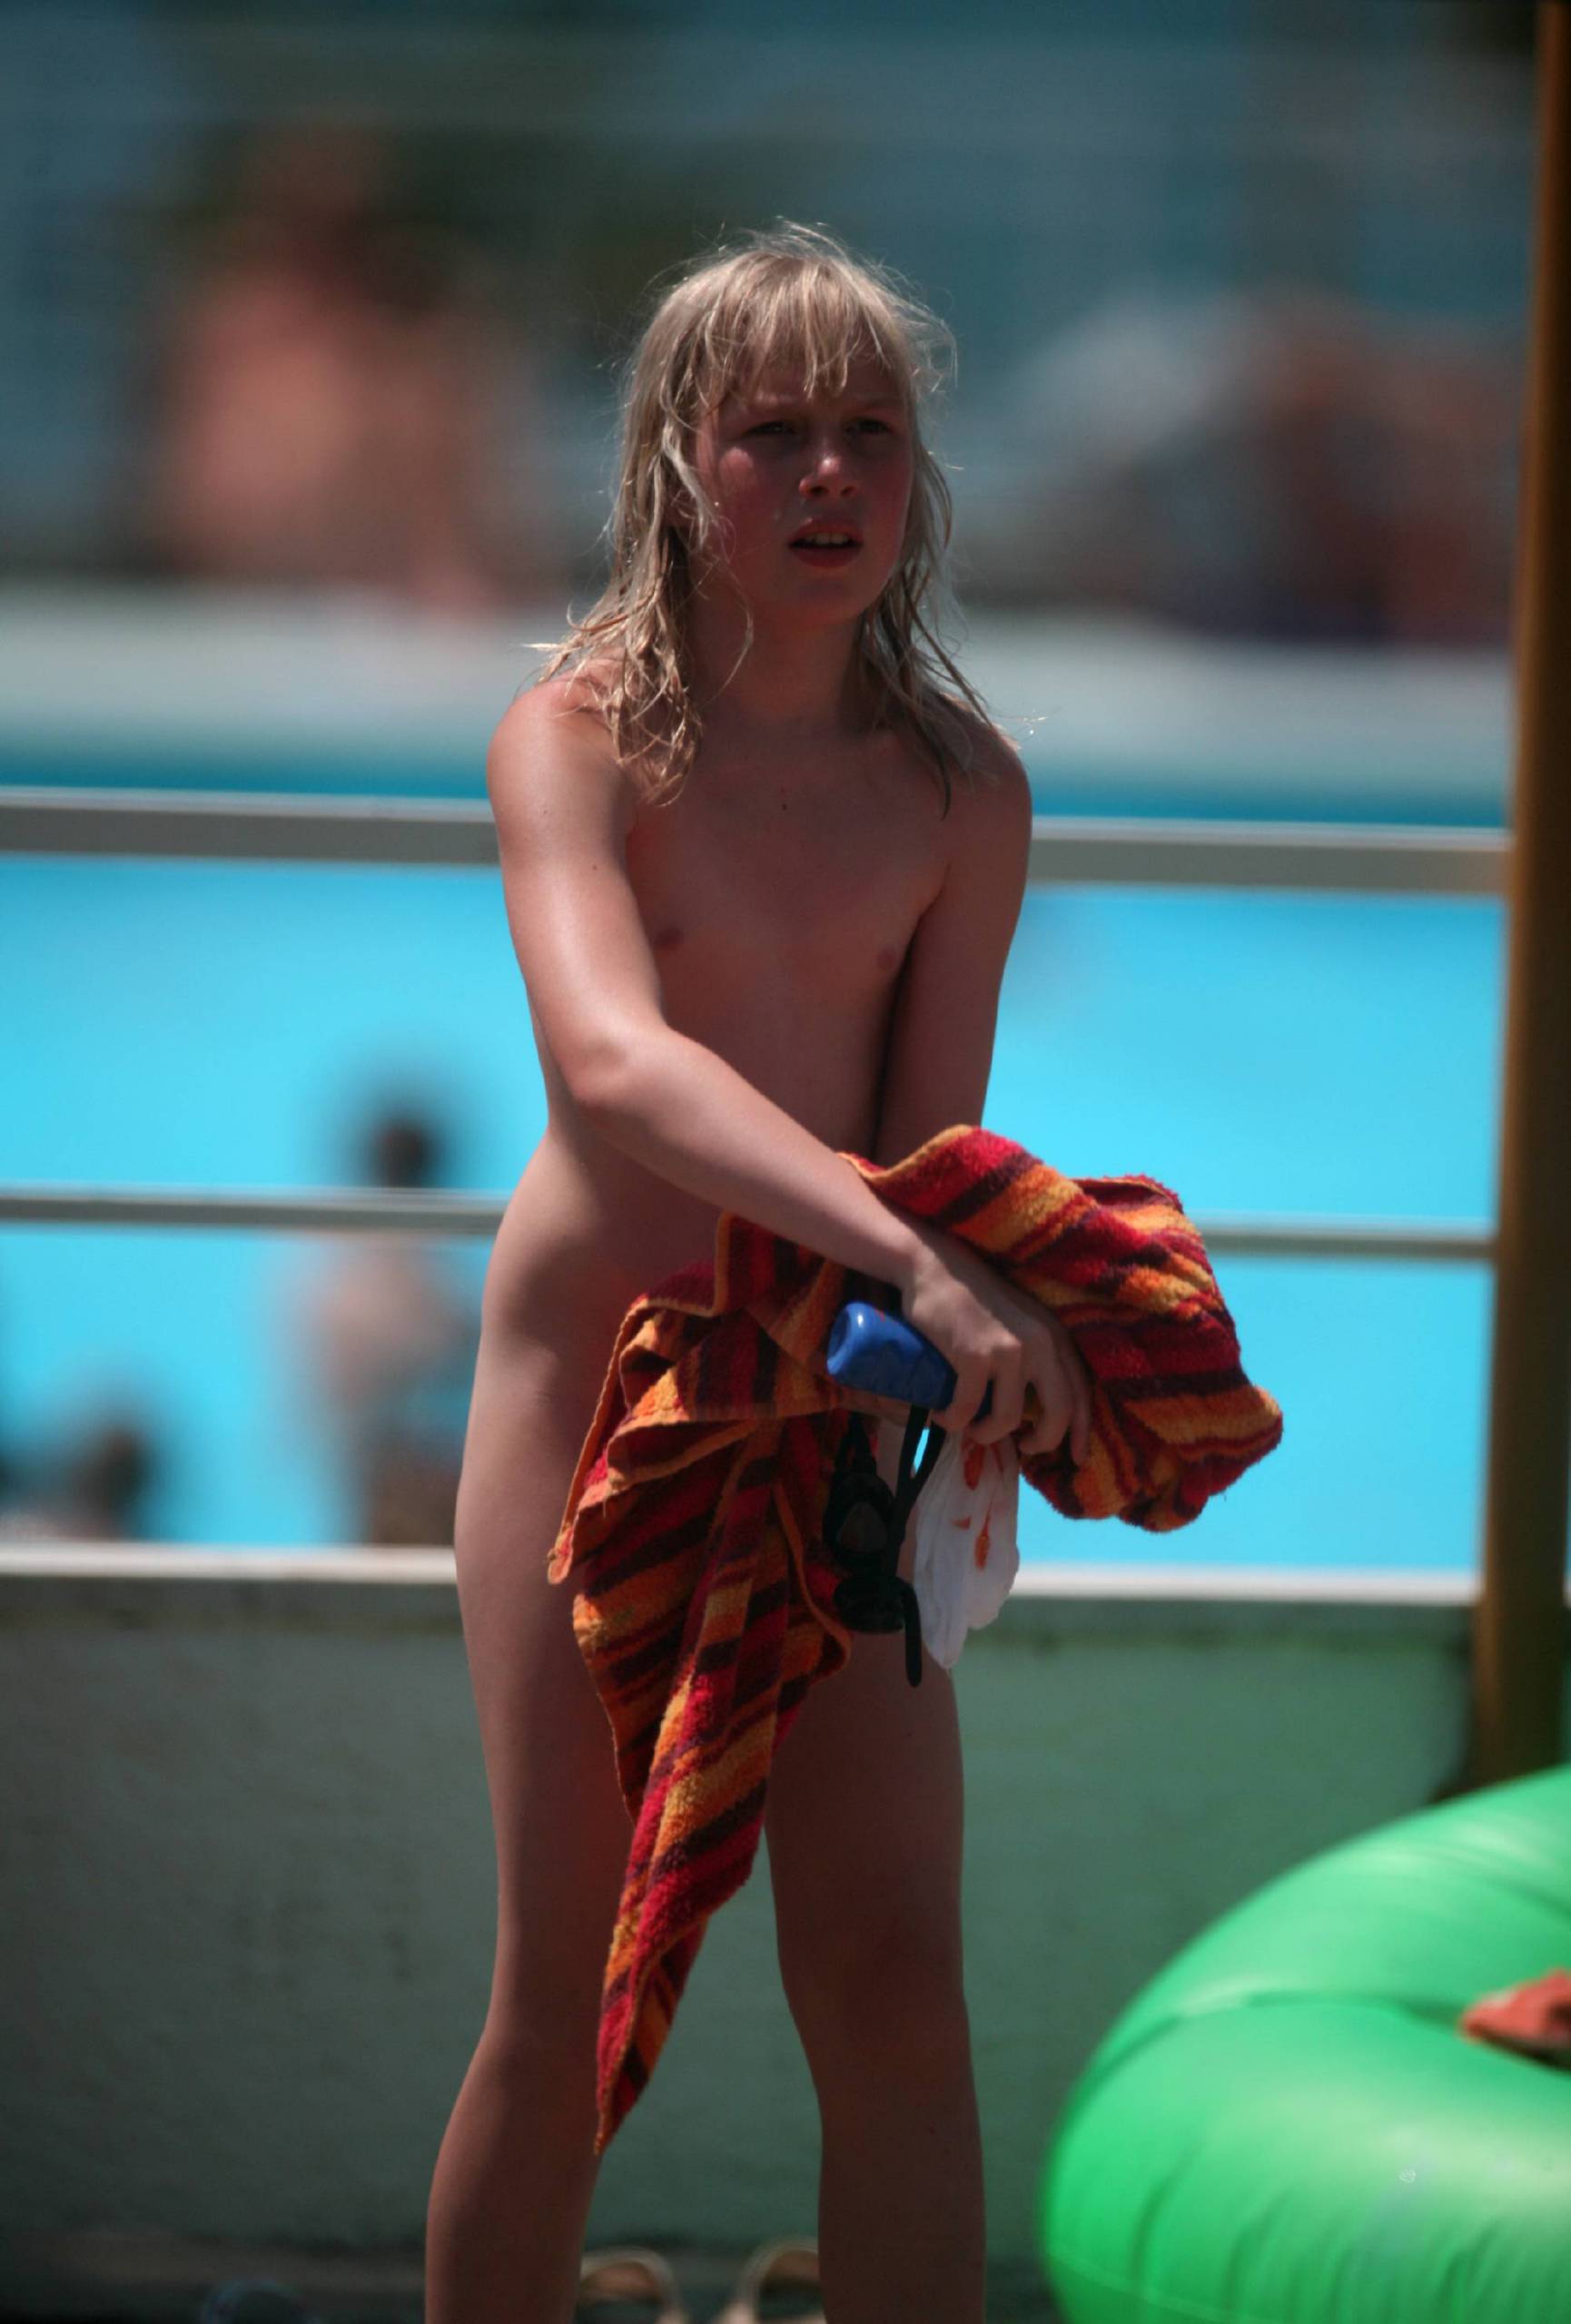 Nudist Pool Resort Towel - Naturist Teen